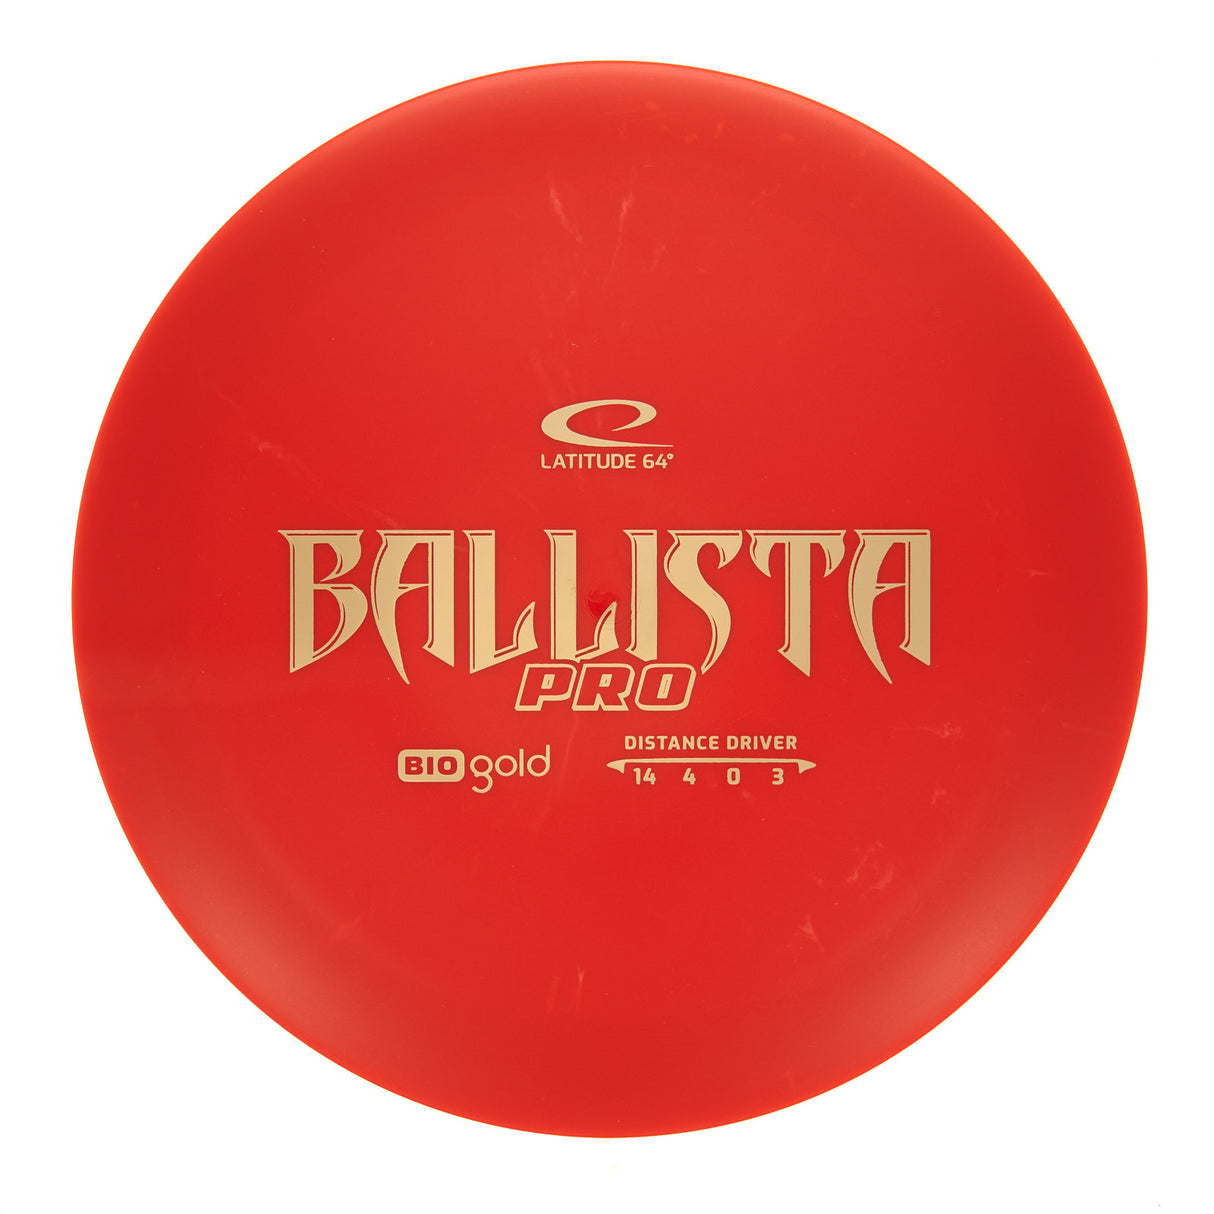 Latitude 64 Ballista Pro - Bio Gold 171g | Style 0005